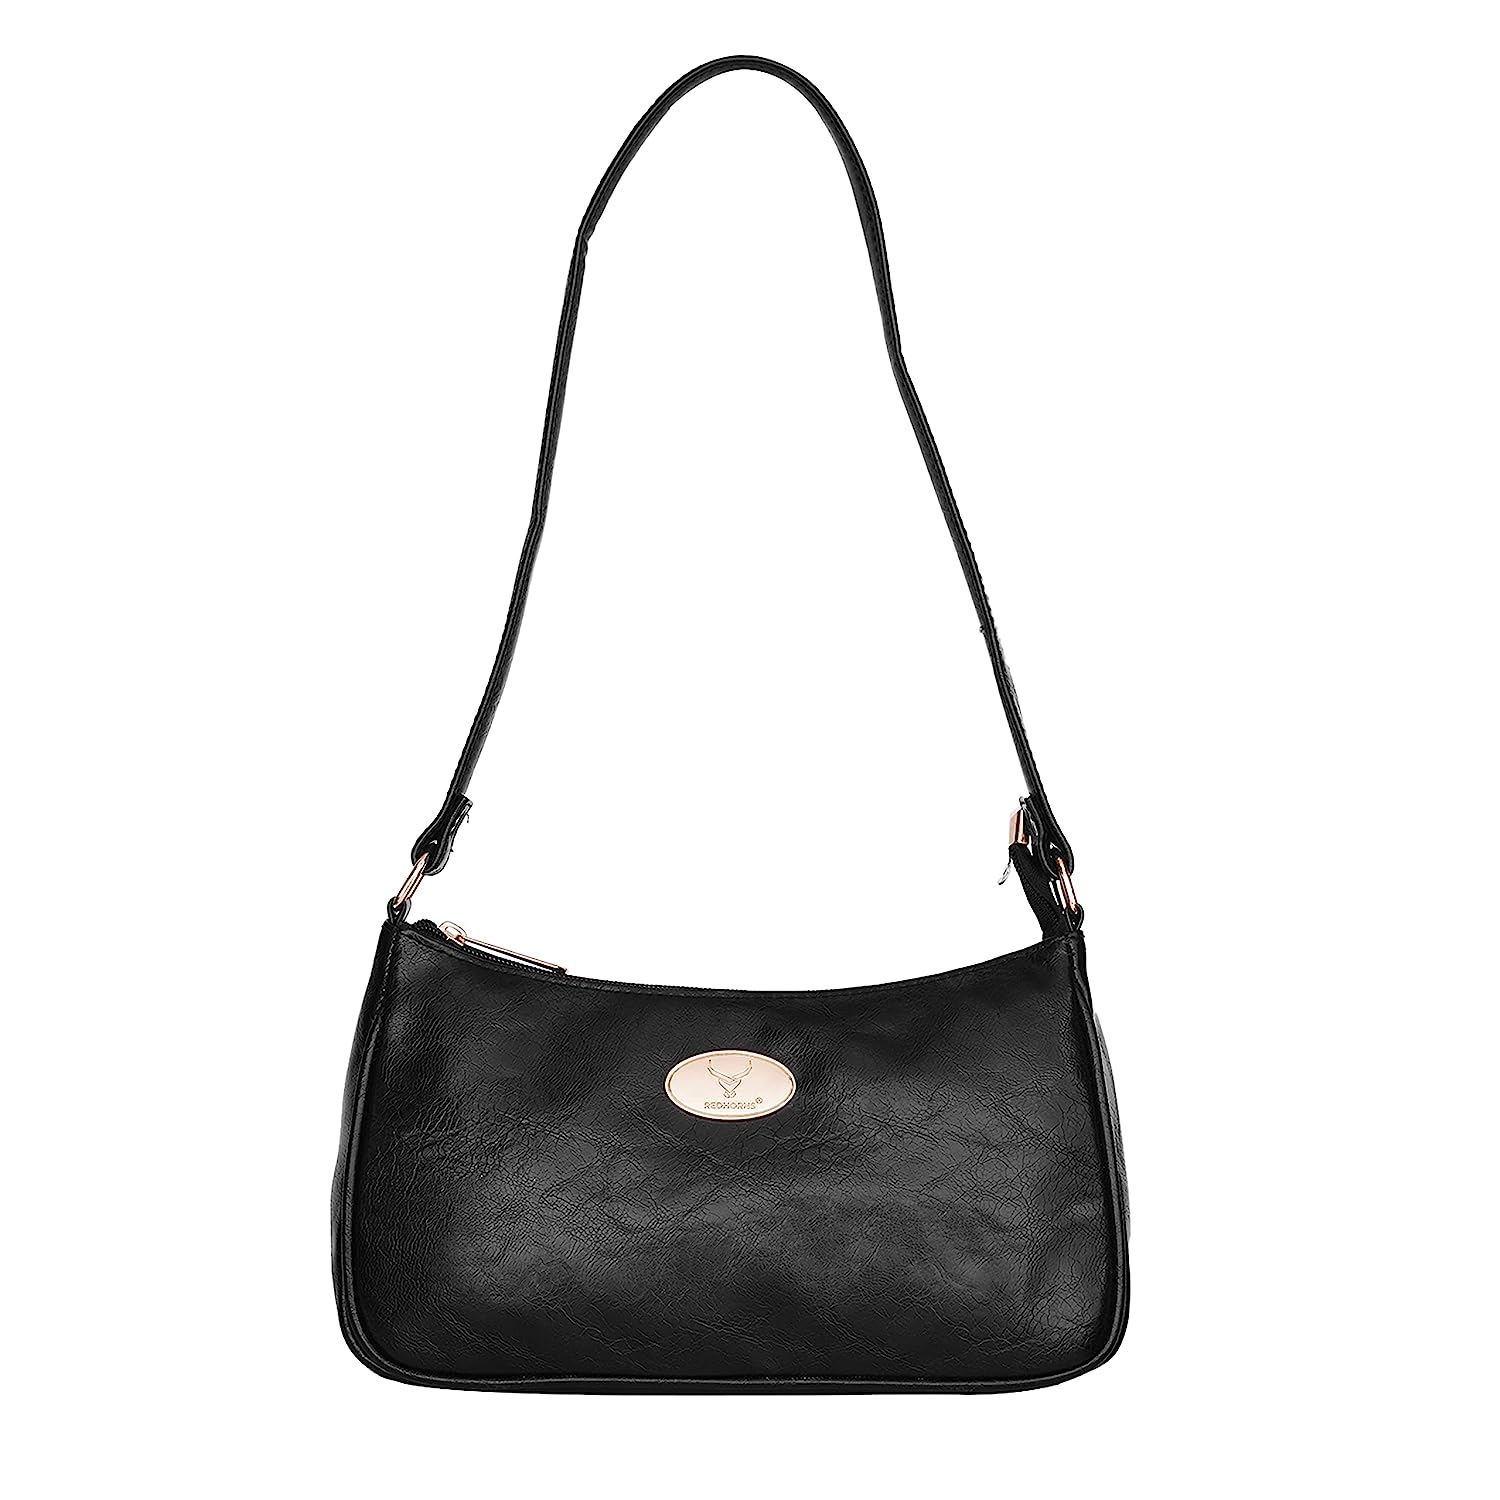 BOSTANTEN Women Leather Handbag Designer Satchel Purses Top Handle Sho